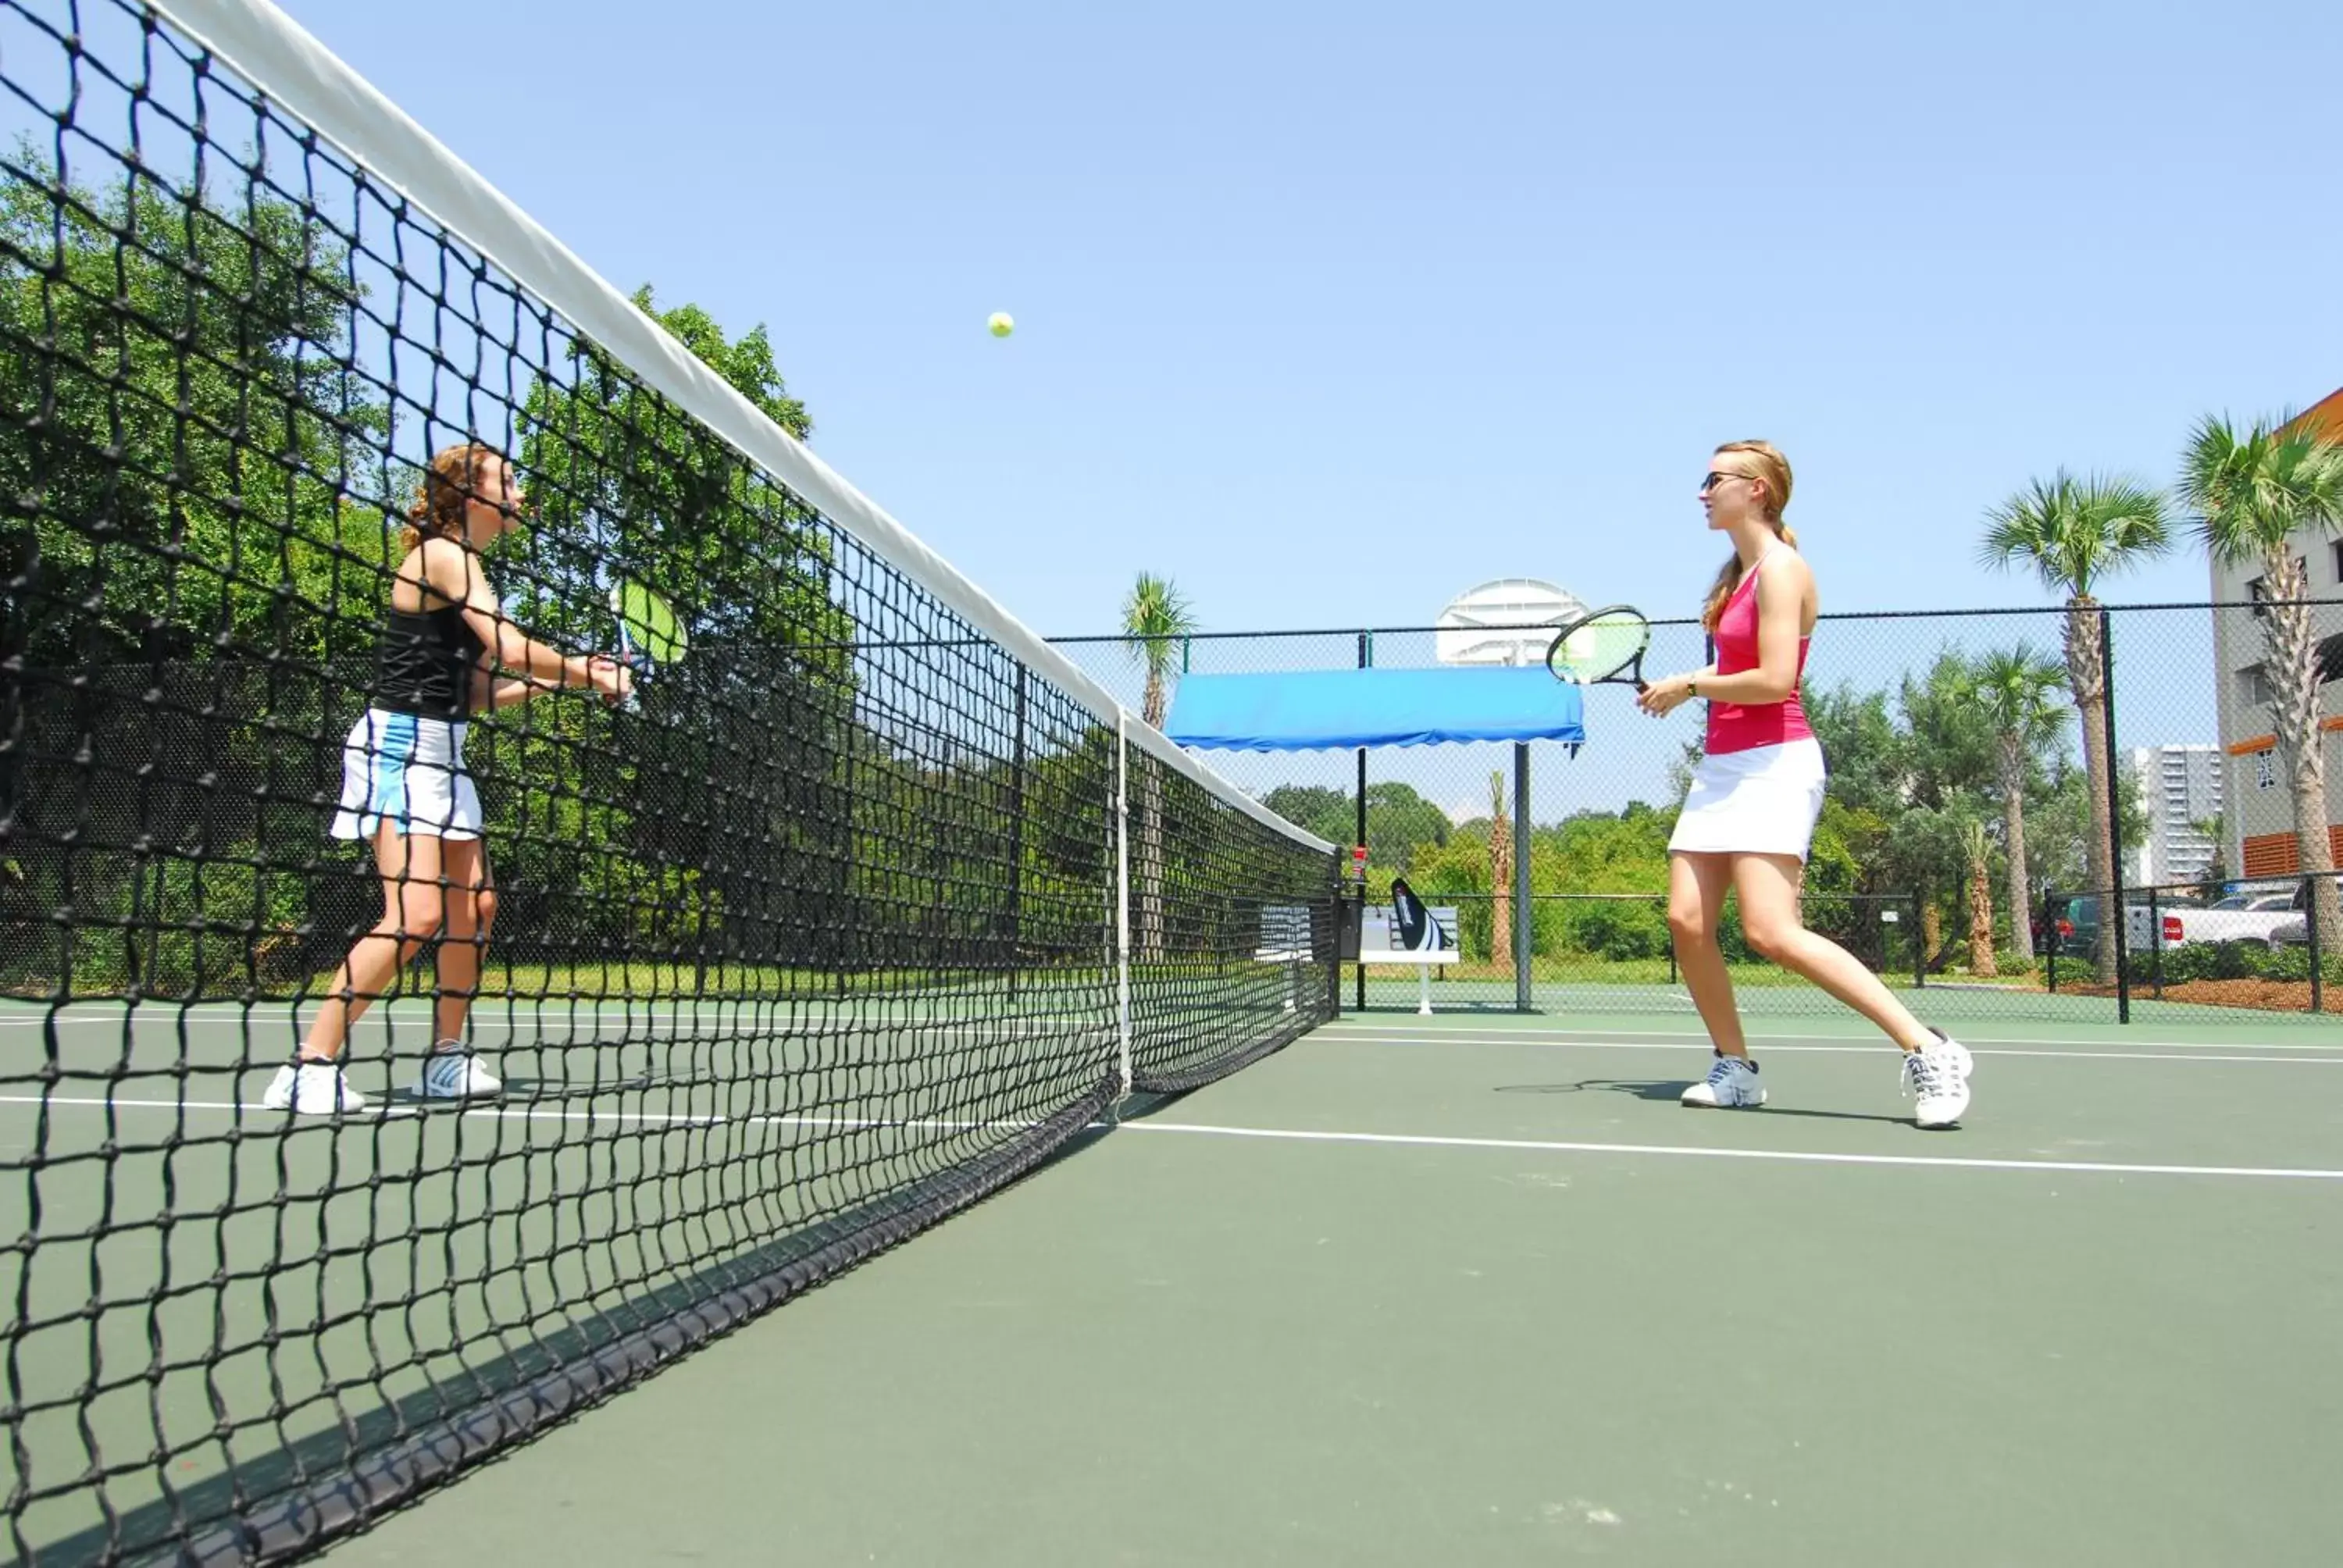 Tennis court, Other Activities in Dunes Village